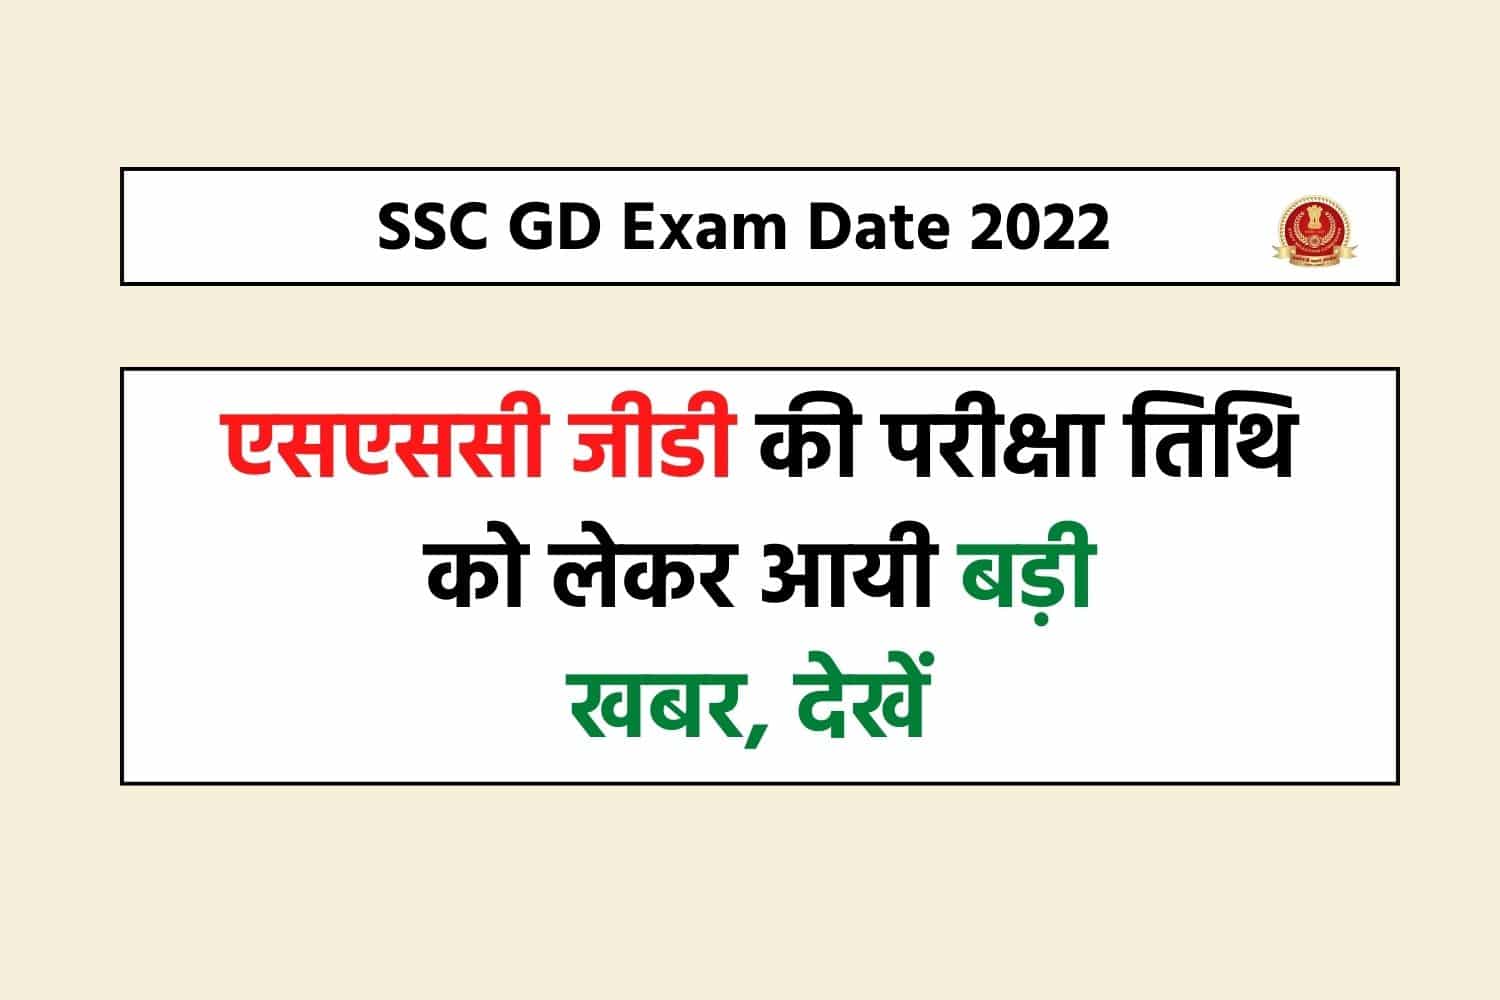 SSC GD Exam 2022 : एसएससी जीडी की परीक्षा तिथि को लेकर आई बड़ी खबर, देखें